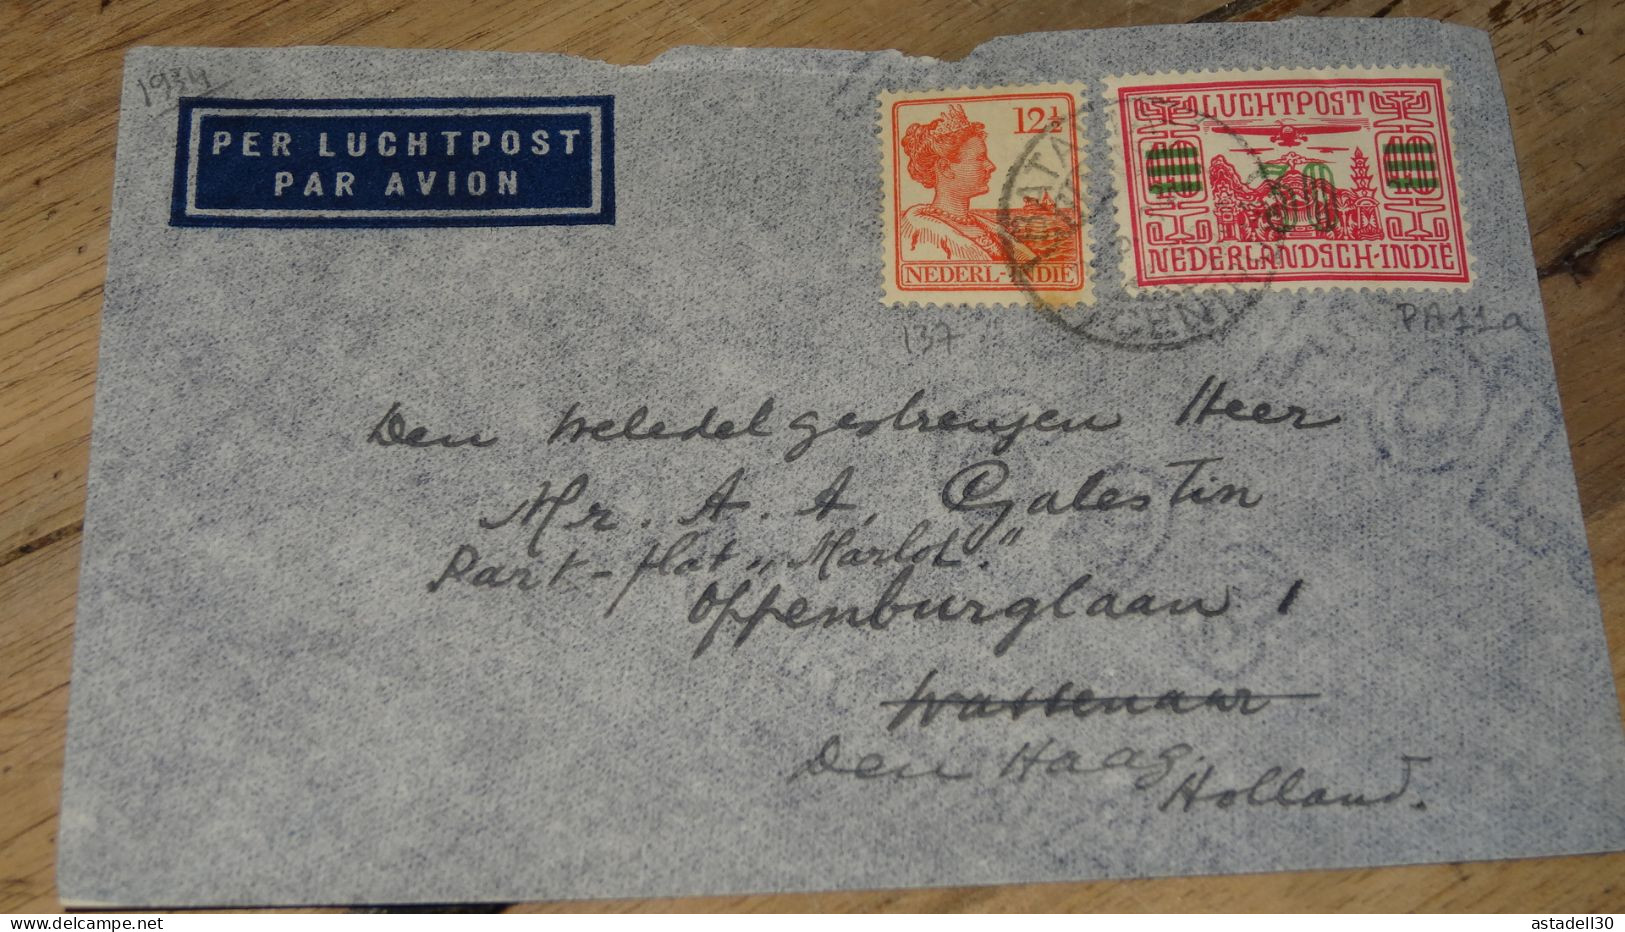 NEDERLANDISCH INDIE, Cover Luchtpost To Holland - 1934 ......... ..... 240424 ....... CL5-6 - Indie Olandesi